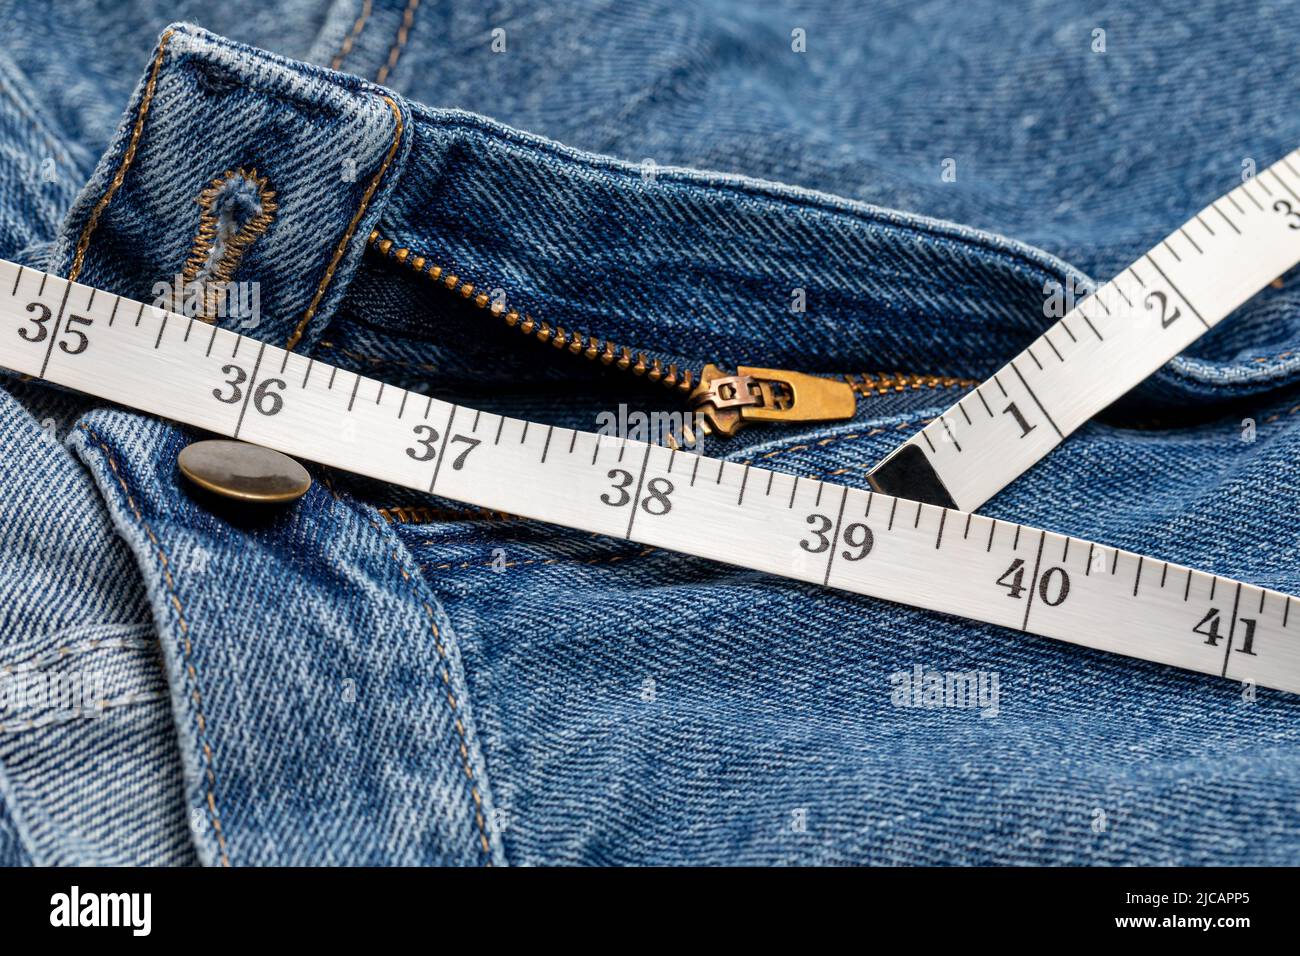 Pantalones y cinta para medir la cintura. Concepto de dieta, pérdida de peso y ganancia. Foto de stock